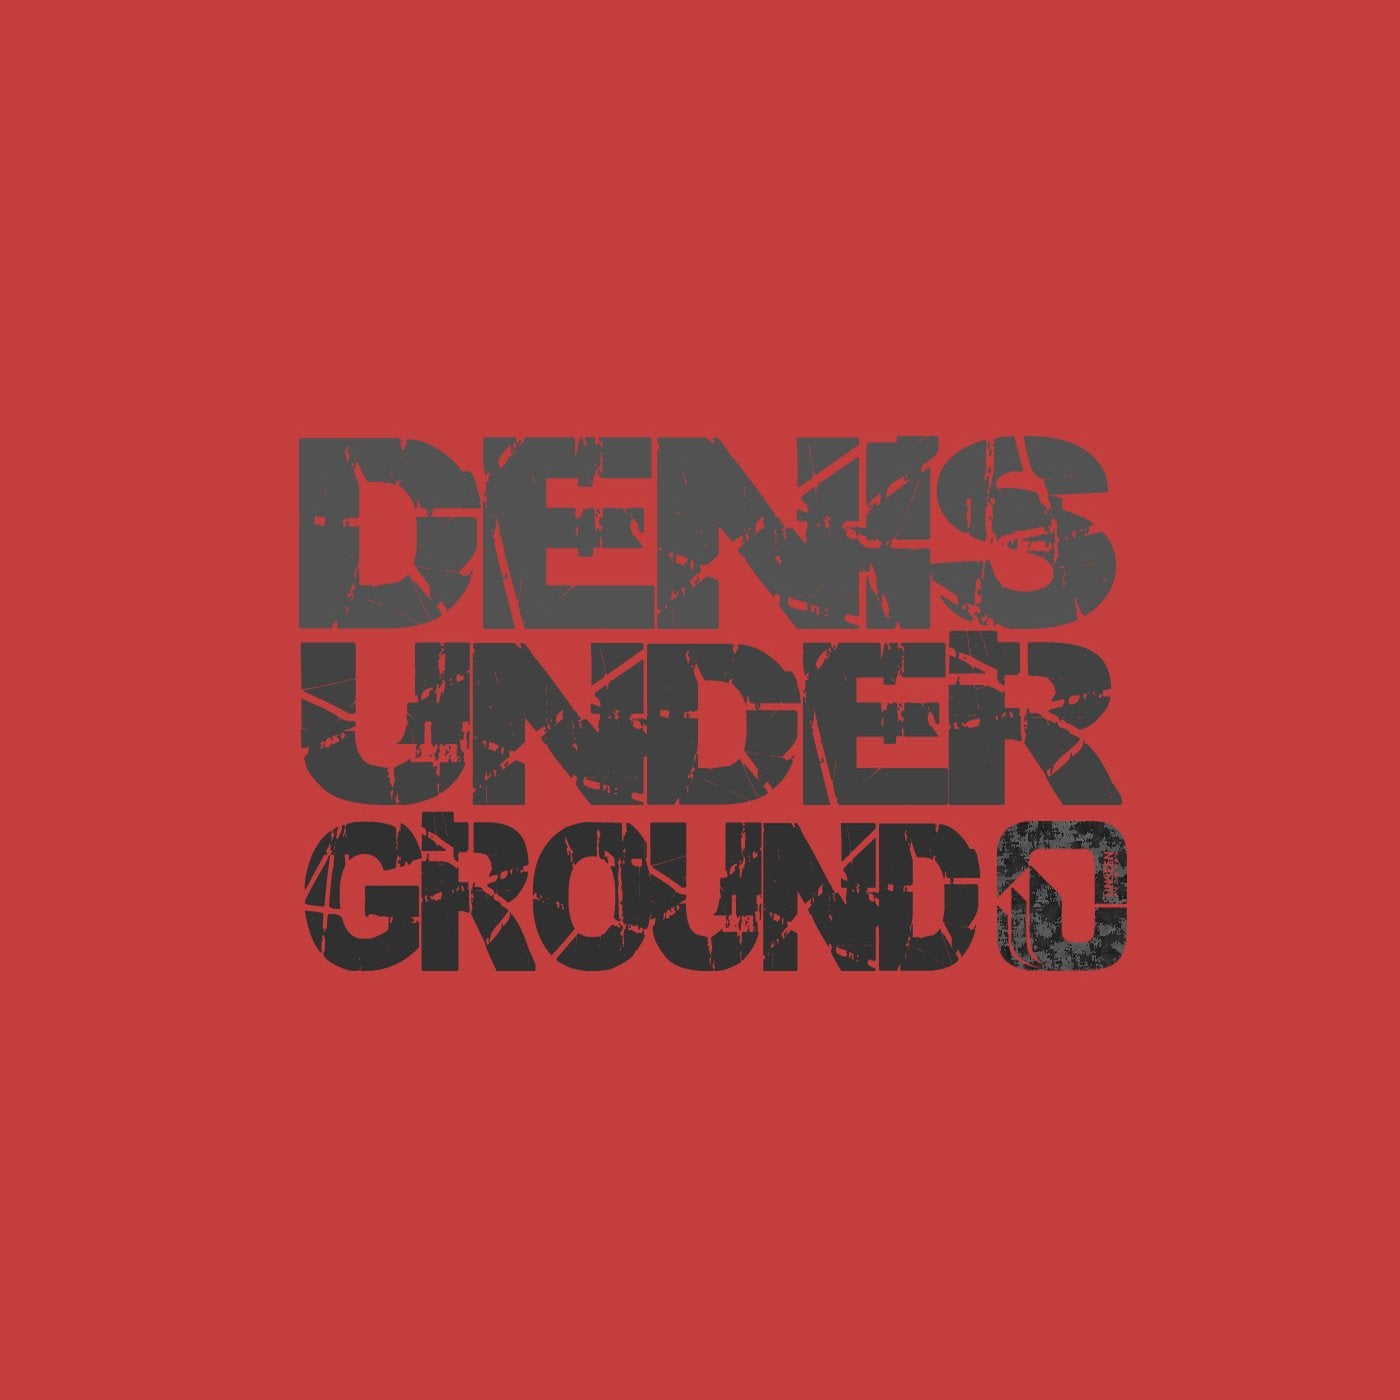 Denis Underground